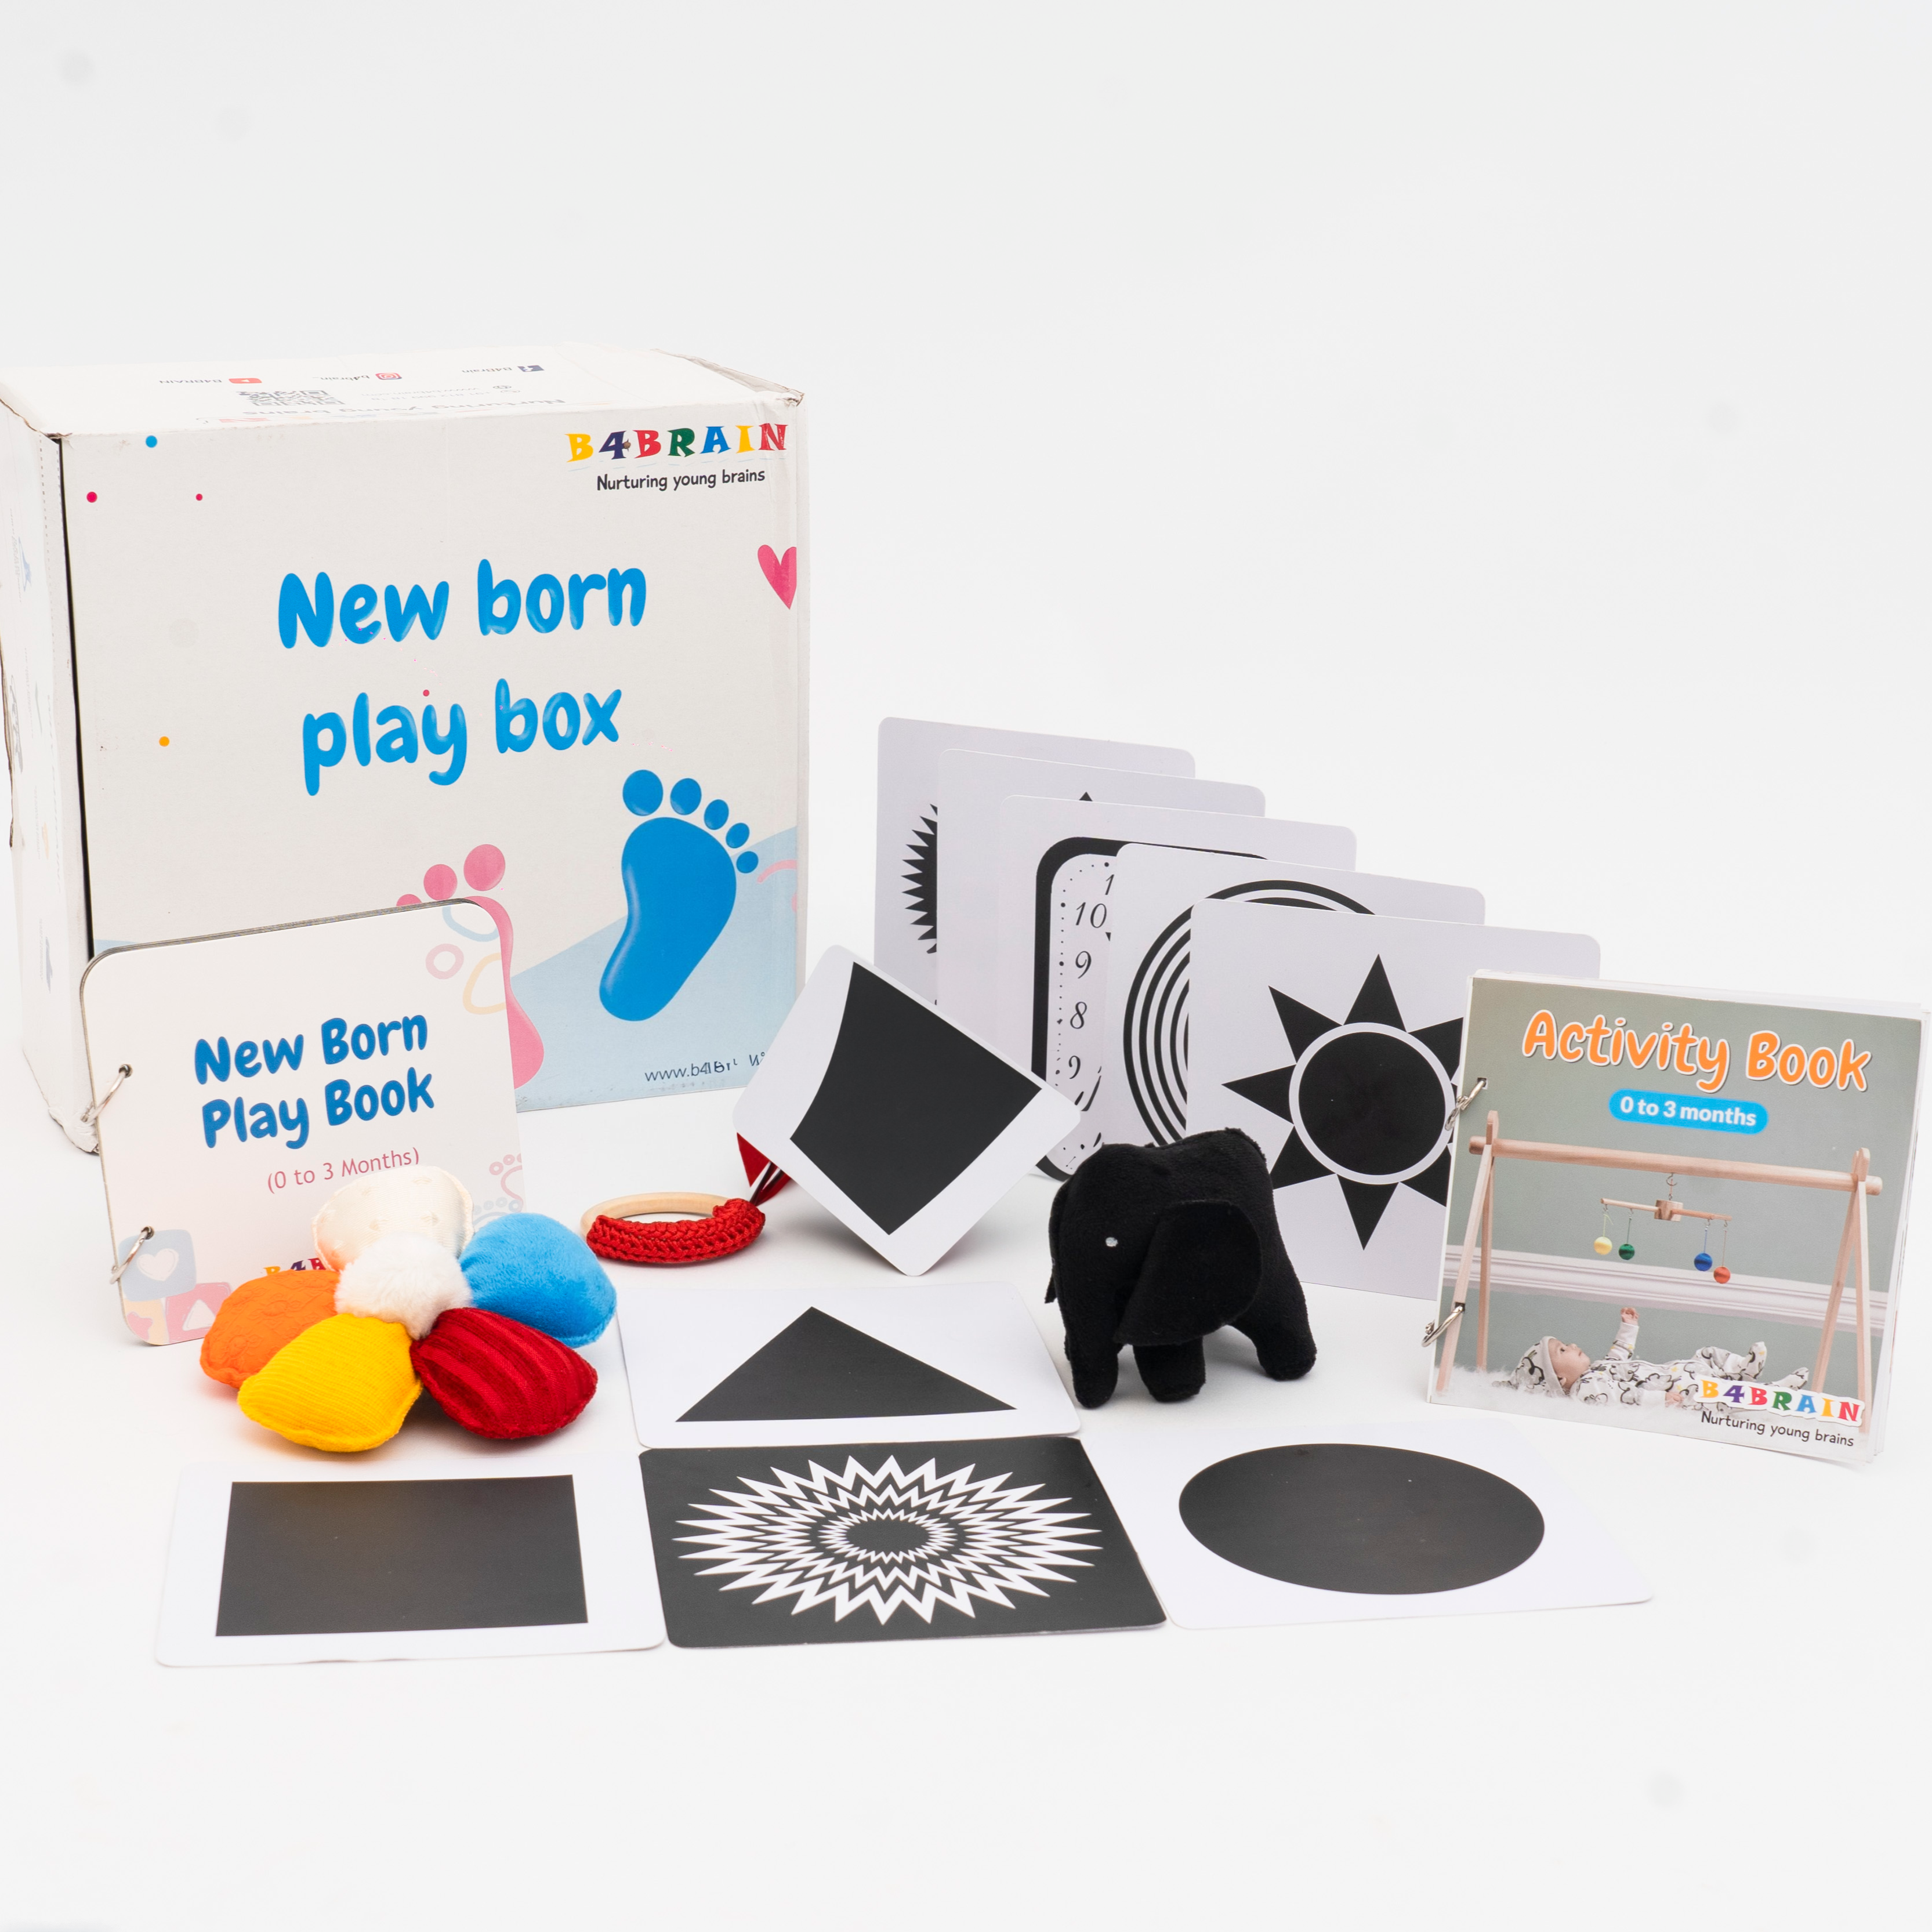 Newborn Gift Box-B4brain (Basic)